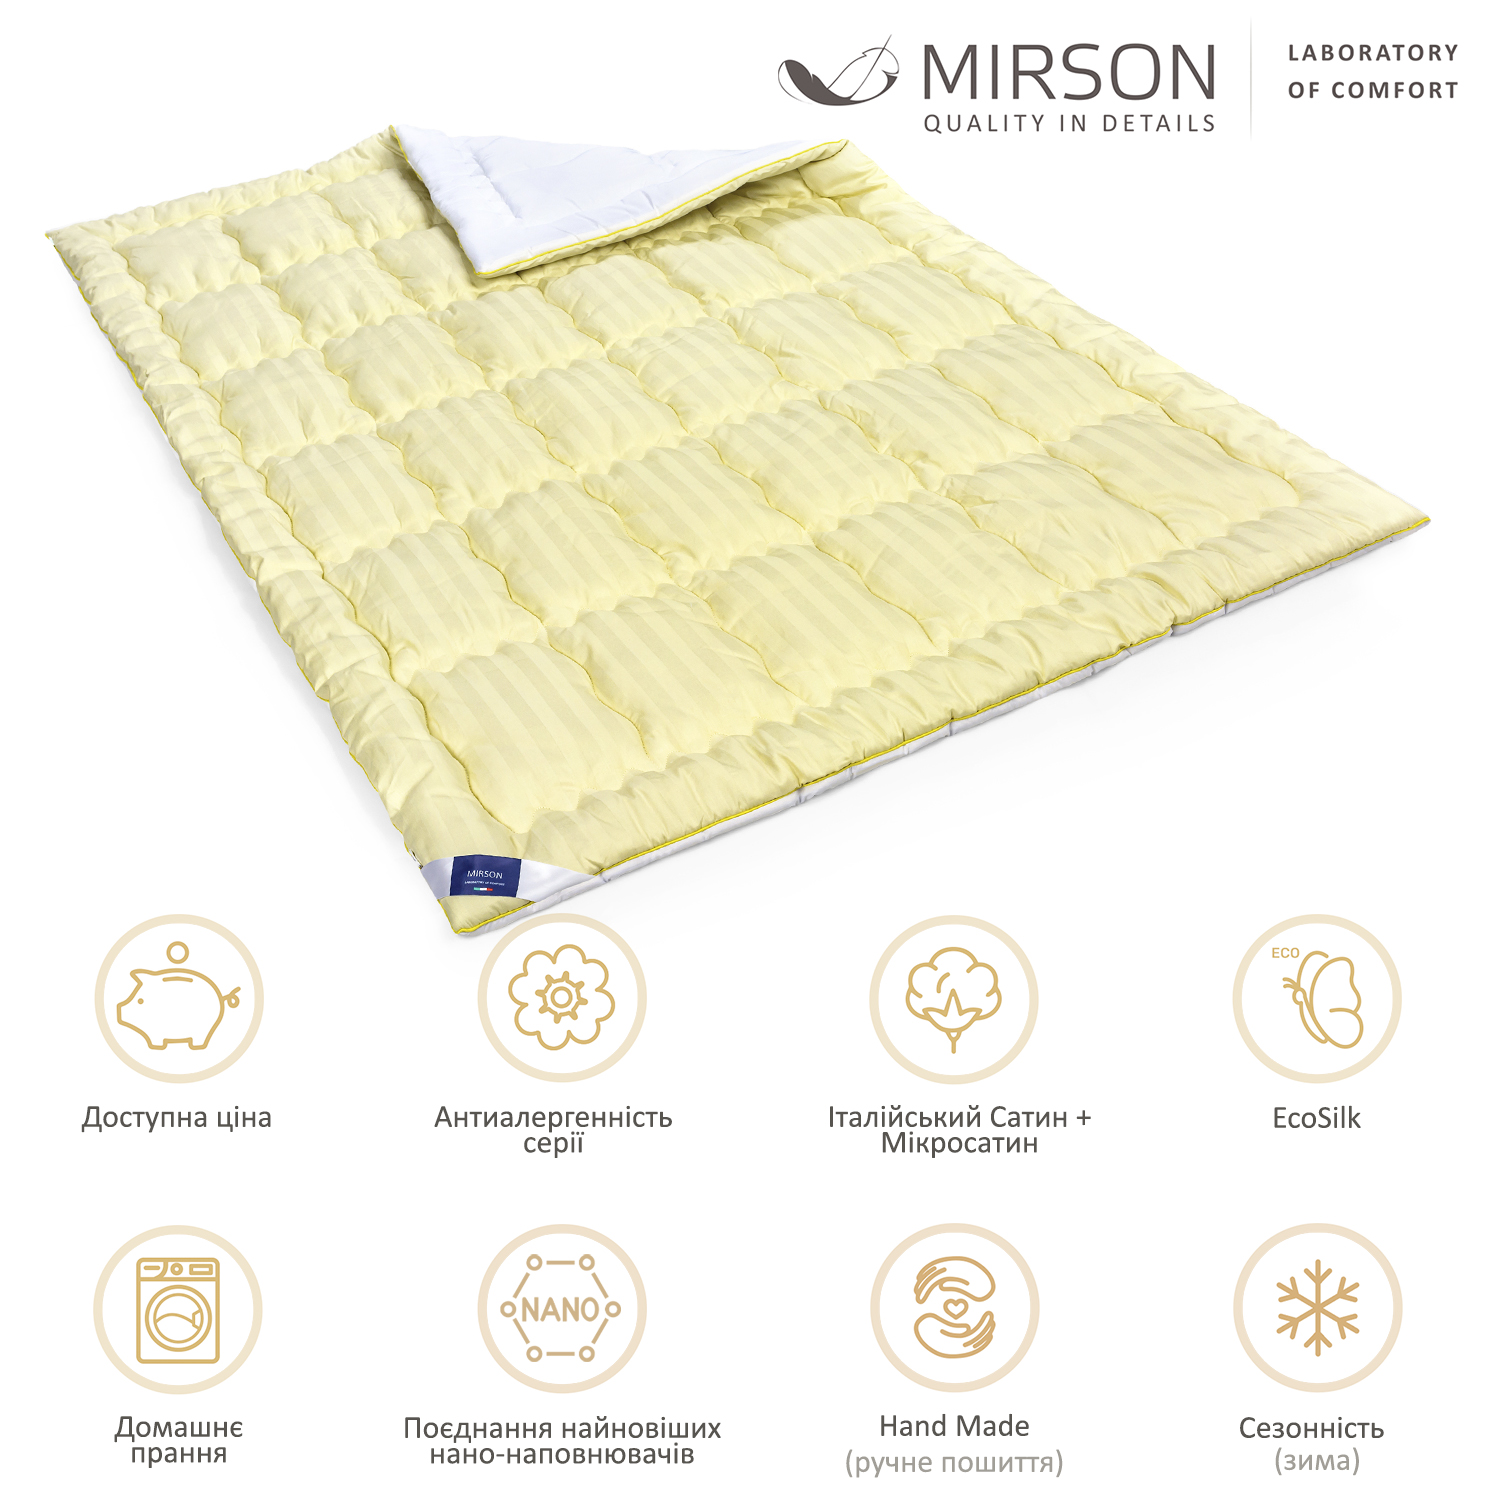 Одеяло антиаллергенное MirSon Carmela Hand Made EcoSilk №0555, зимнее, 172x205 см, желто-белое - фото 6